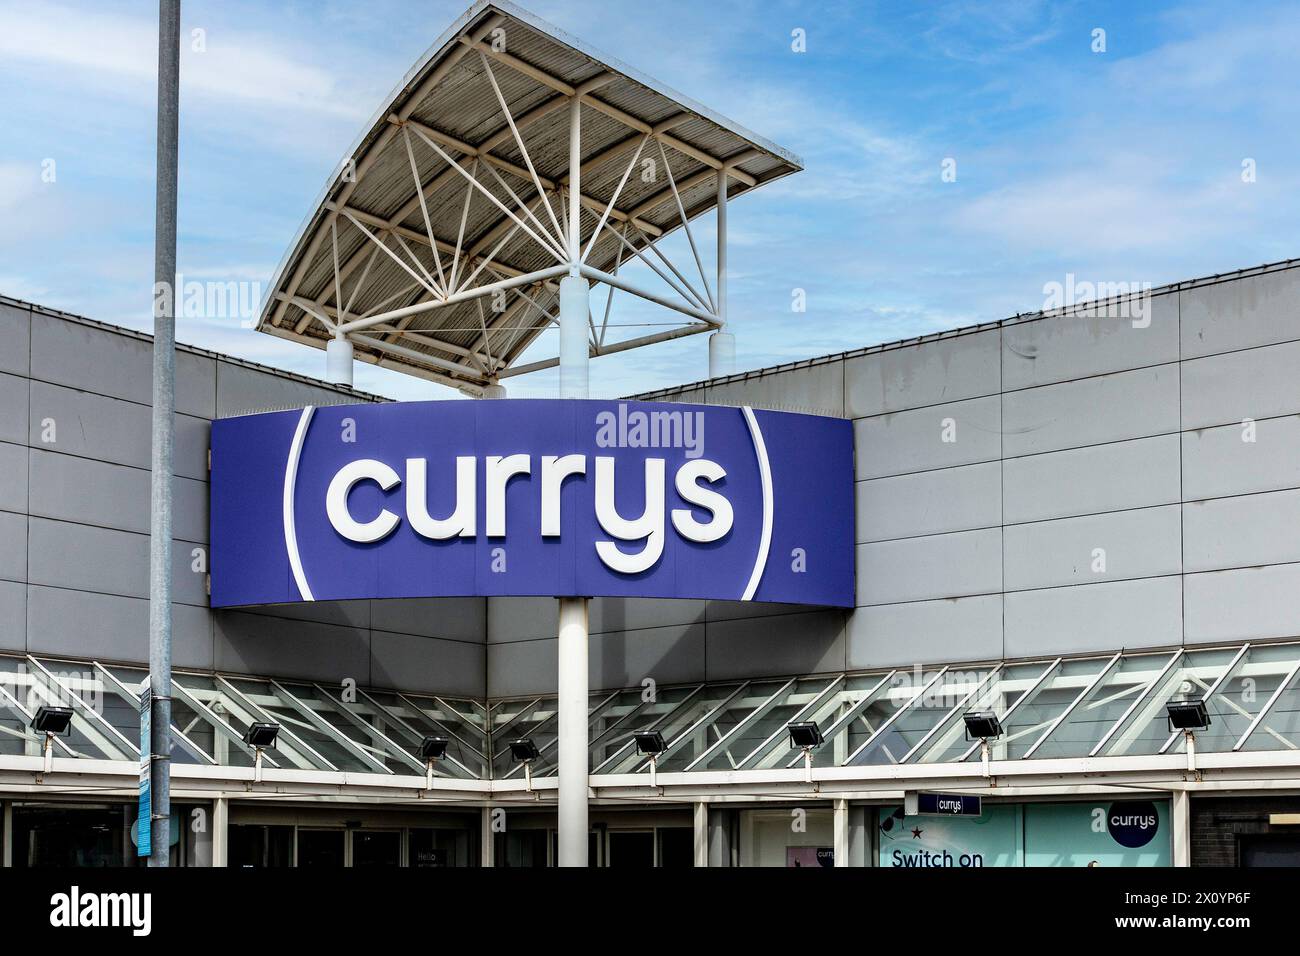 Curry’s, Blanchardstown, Dublin, Irlande. Currys, un détaillant en électricité qui vend des produits blancs, de l'électronique grand public, des ordinateurs, des téléphones portables. Banque D'Images